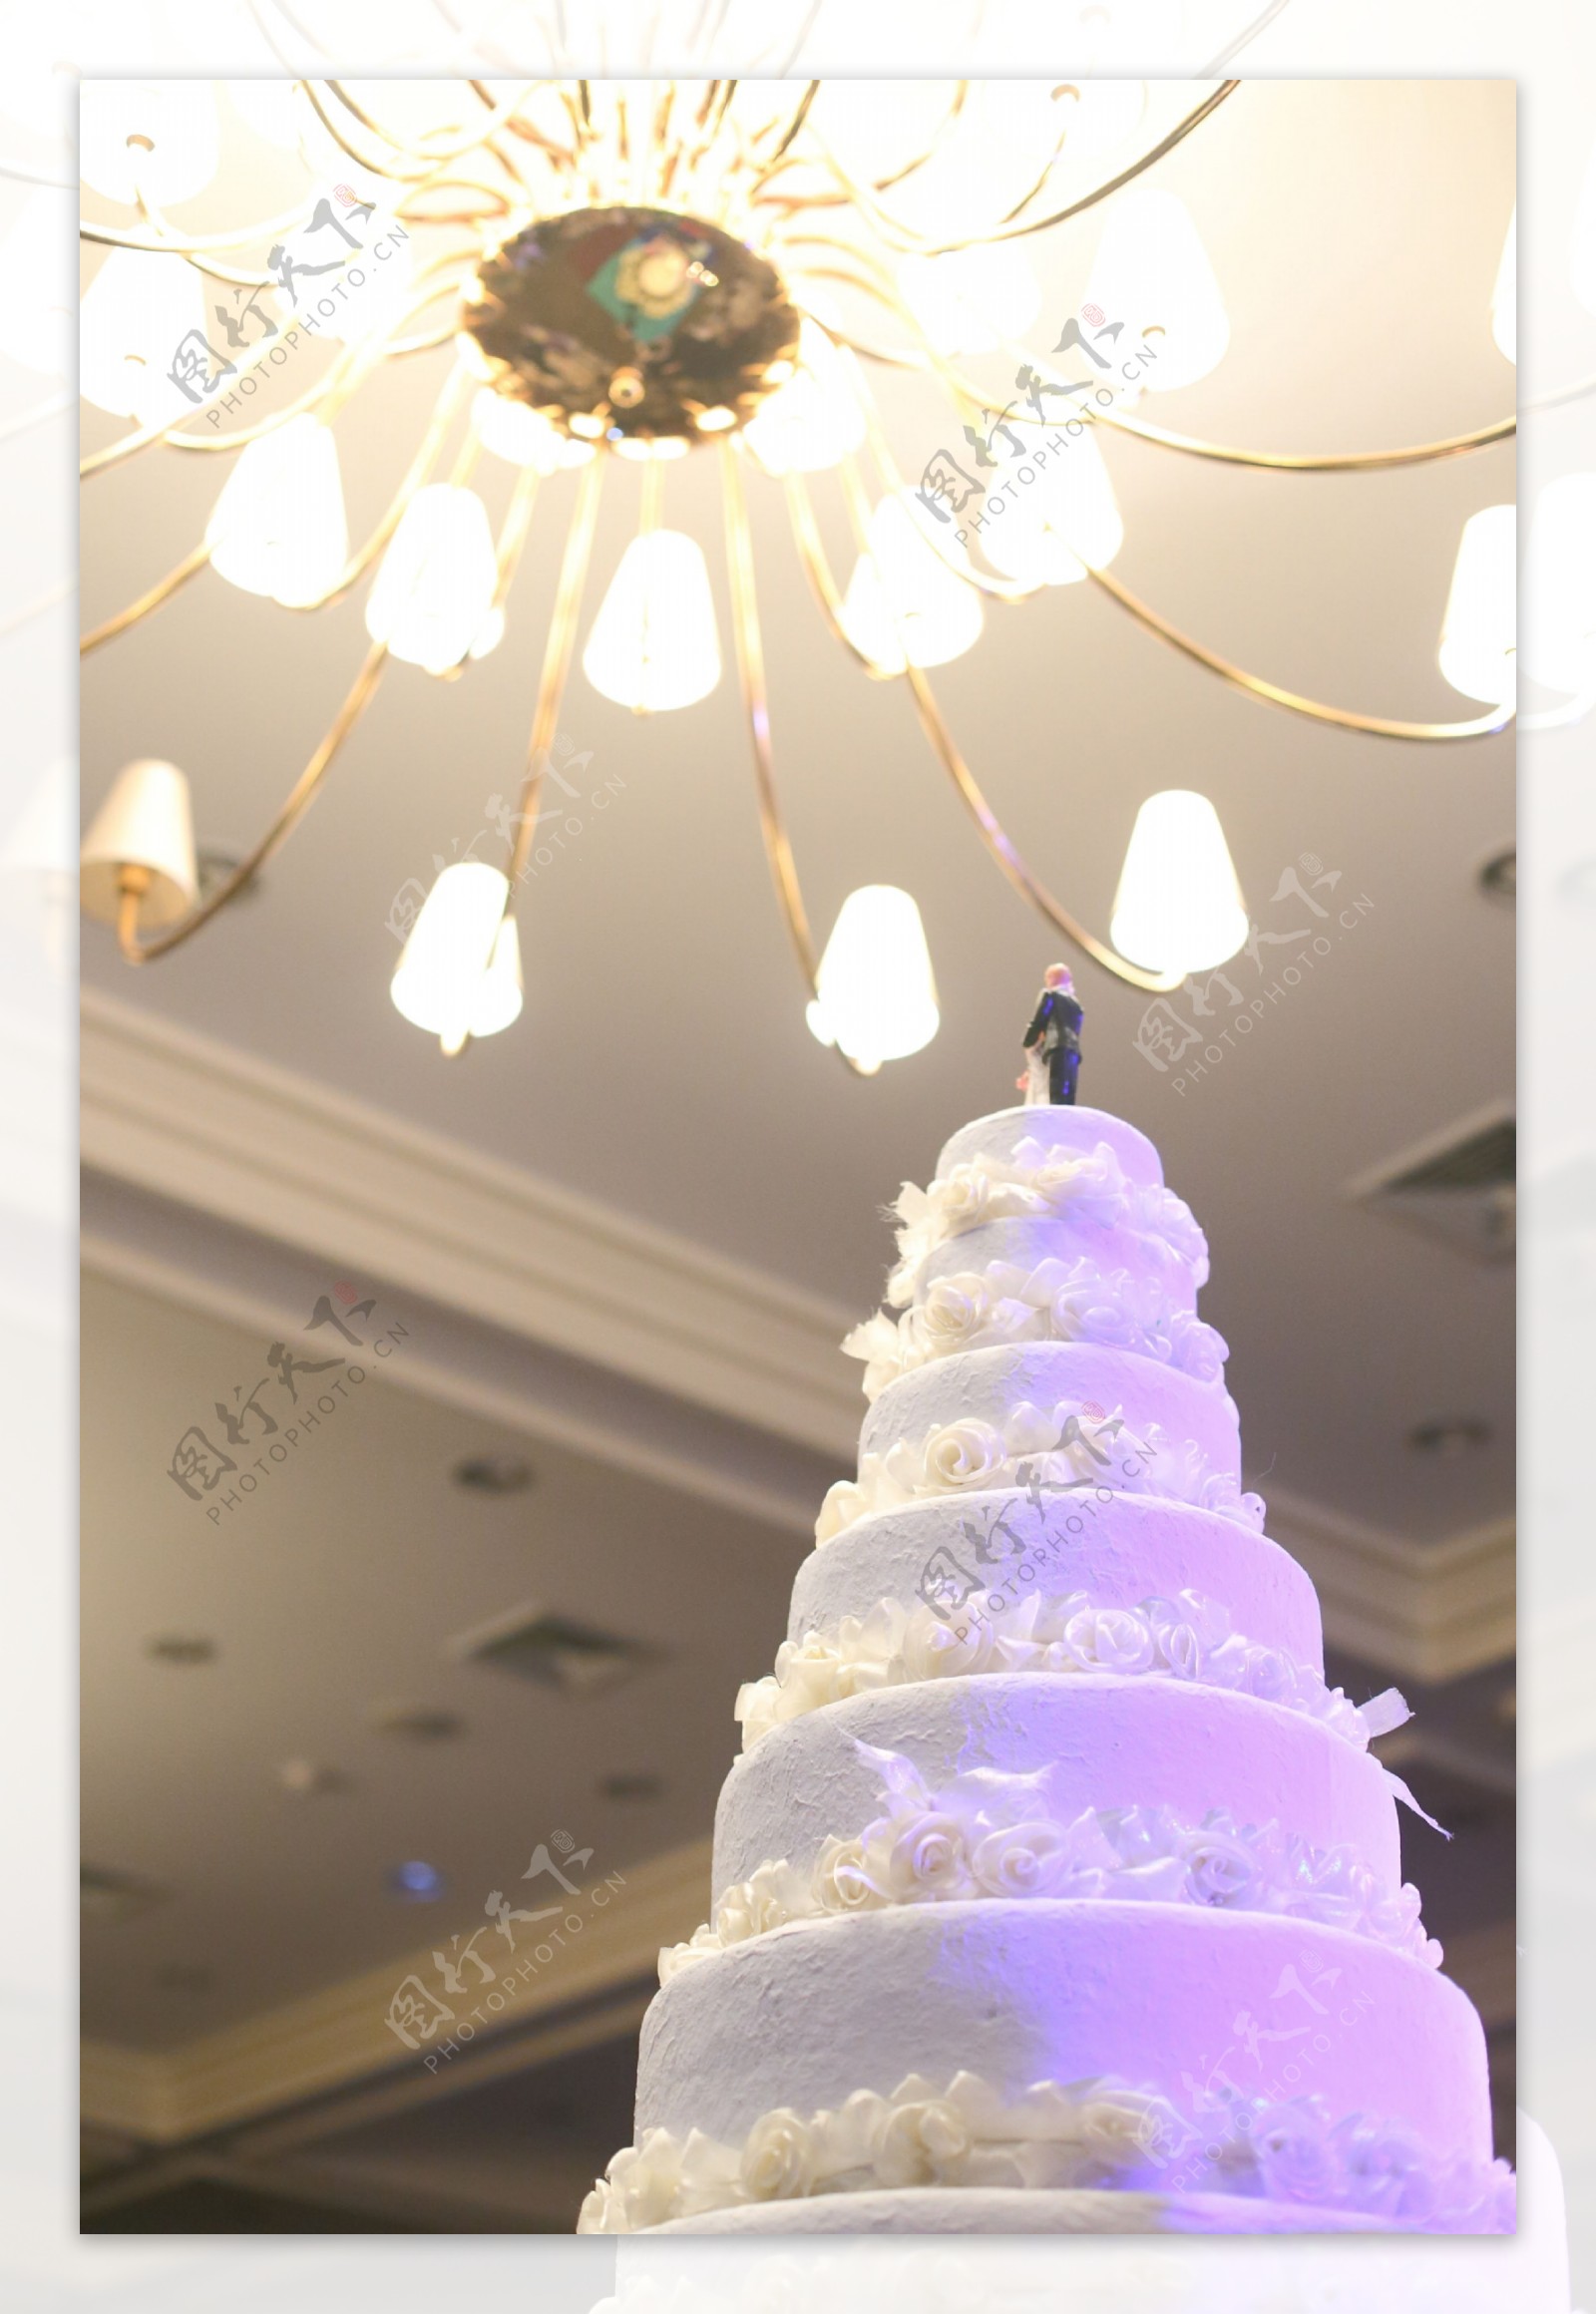 灯光下的婚庆蛋糕图片